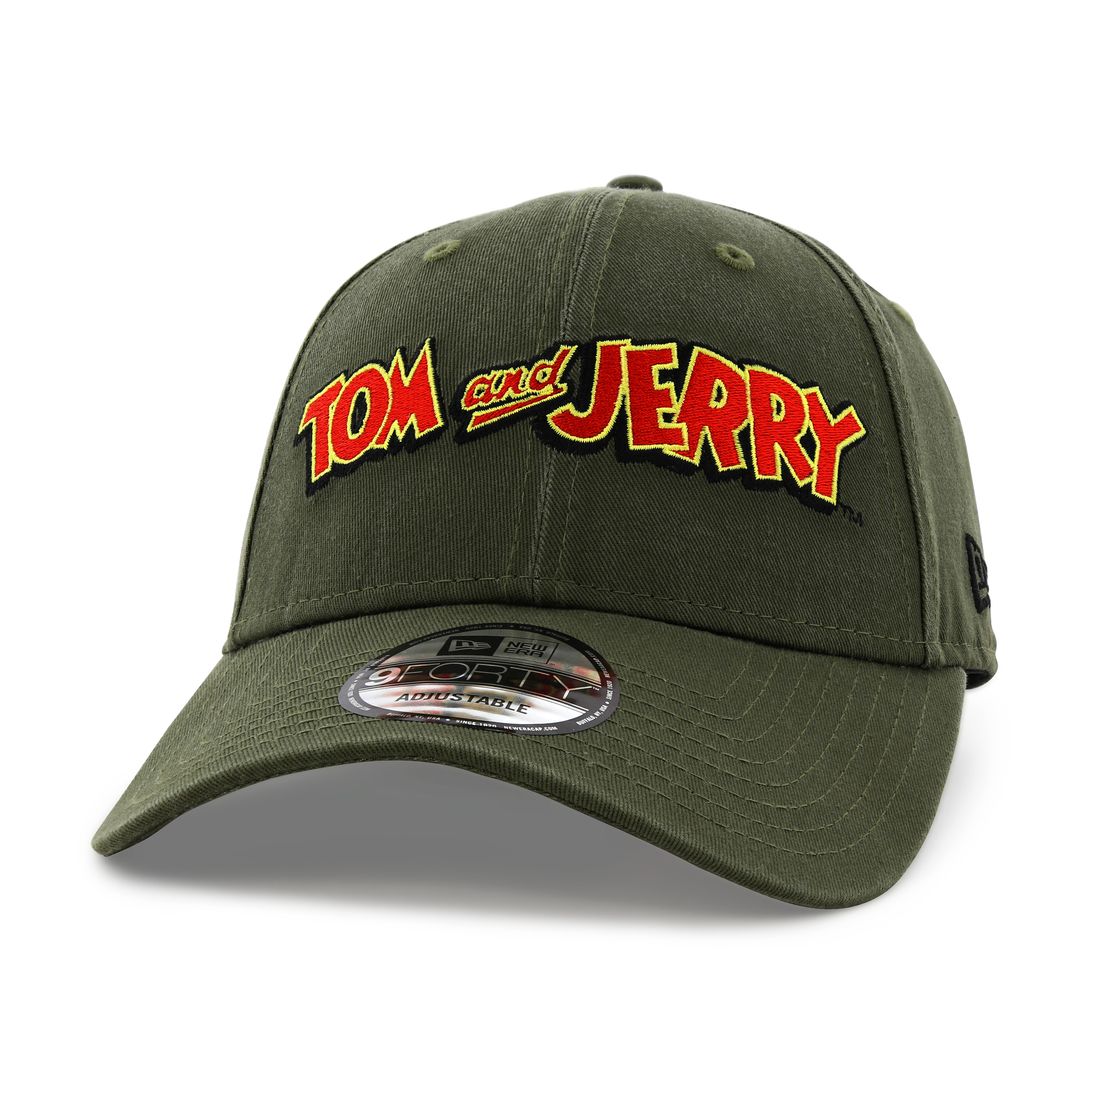 New Era Tom and Jerry Men's Cap Green